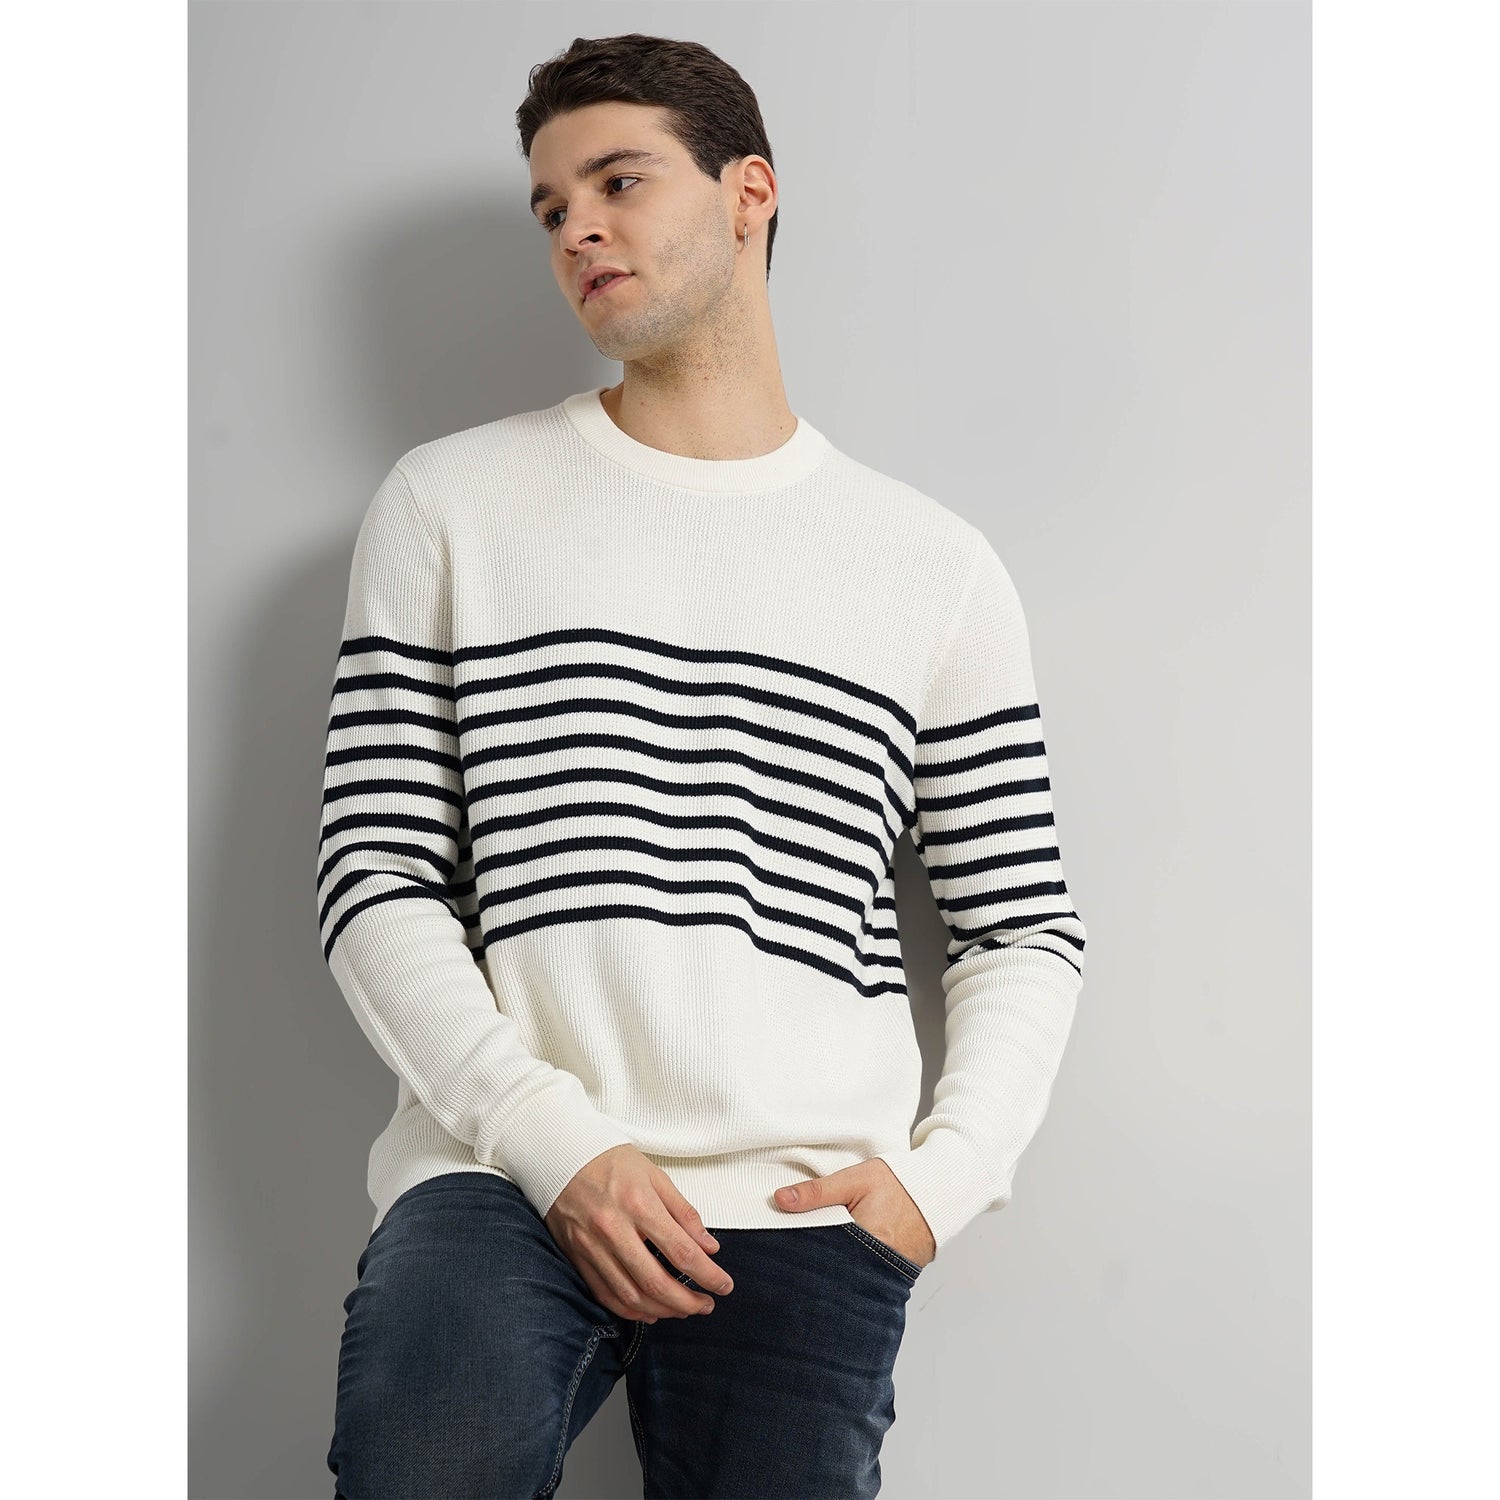 Cotton Off-White Horizontal Stripes Sweater